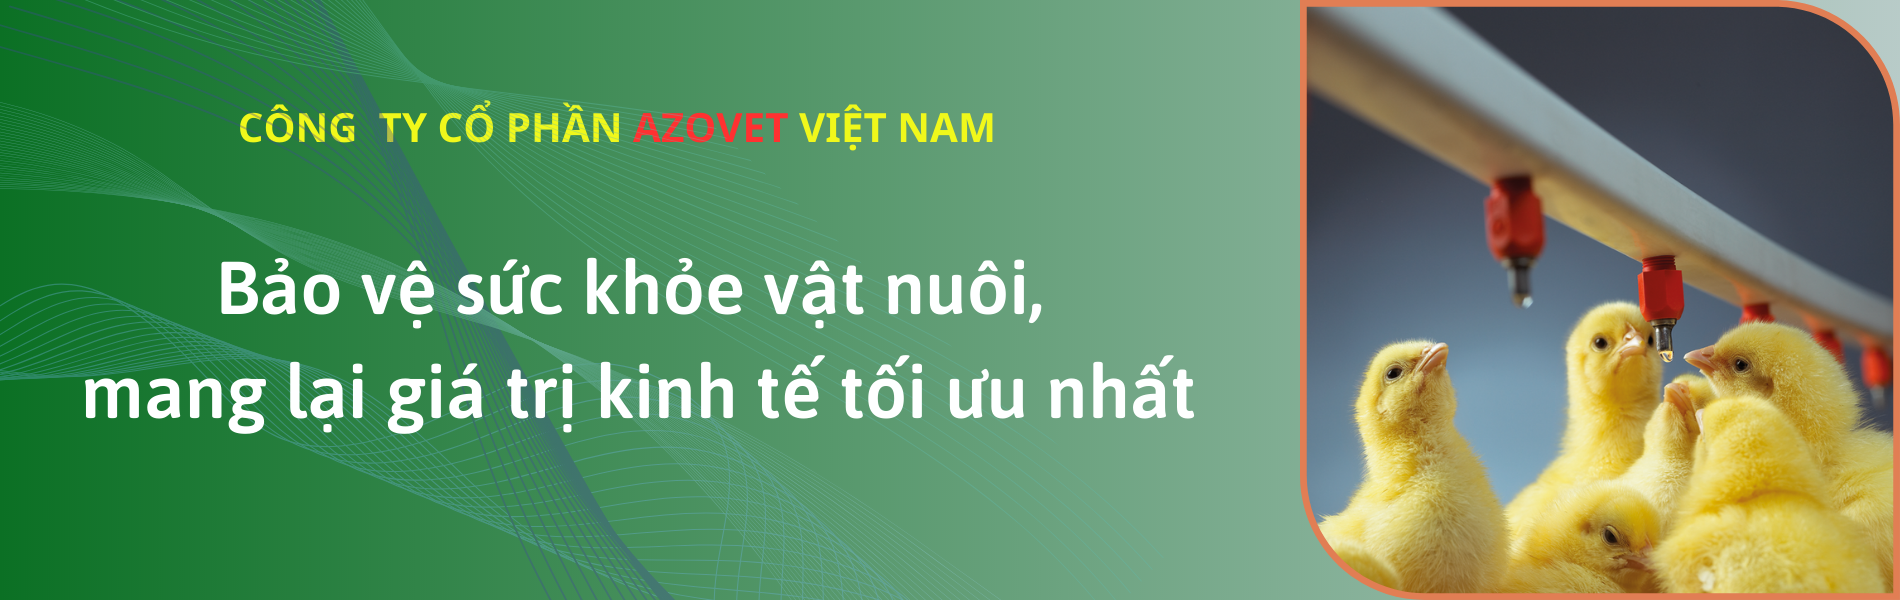 Công ty cổ phần AZOVET Việt Nam